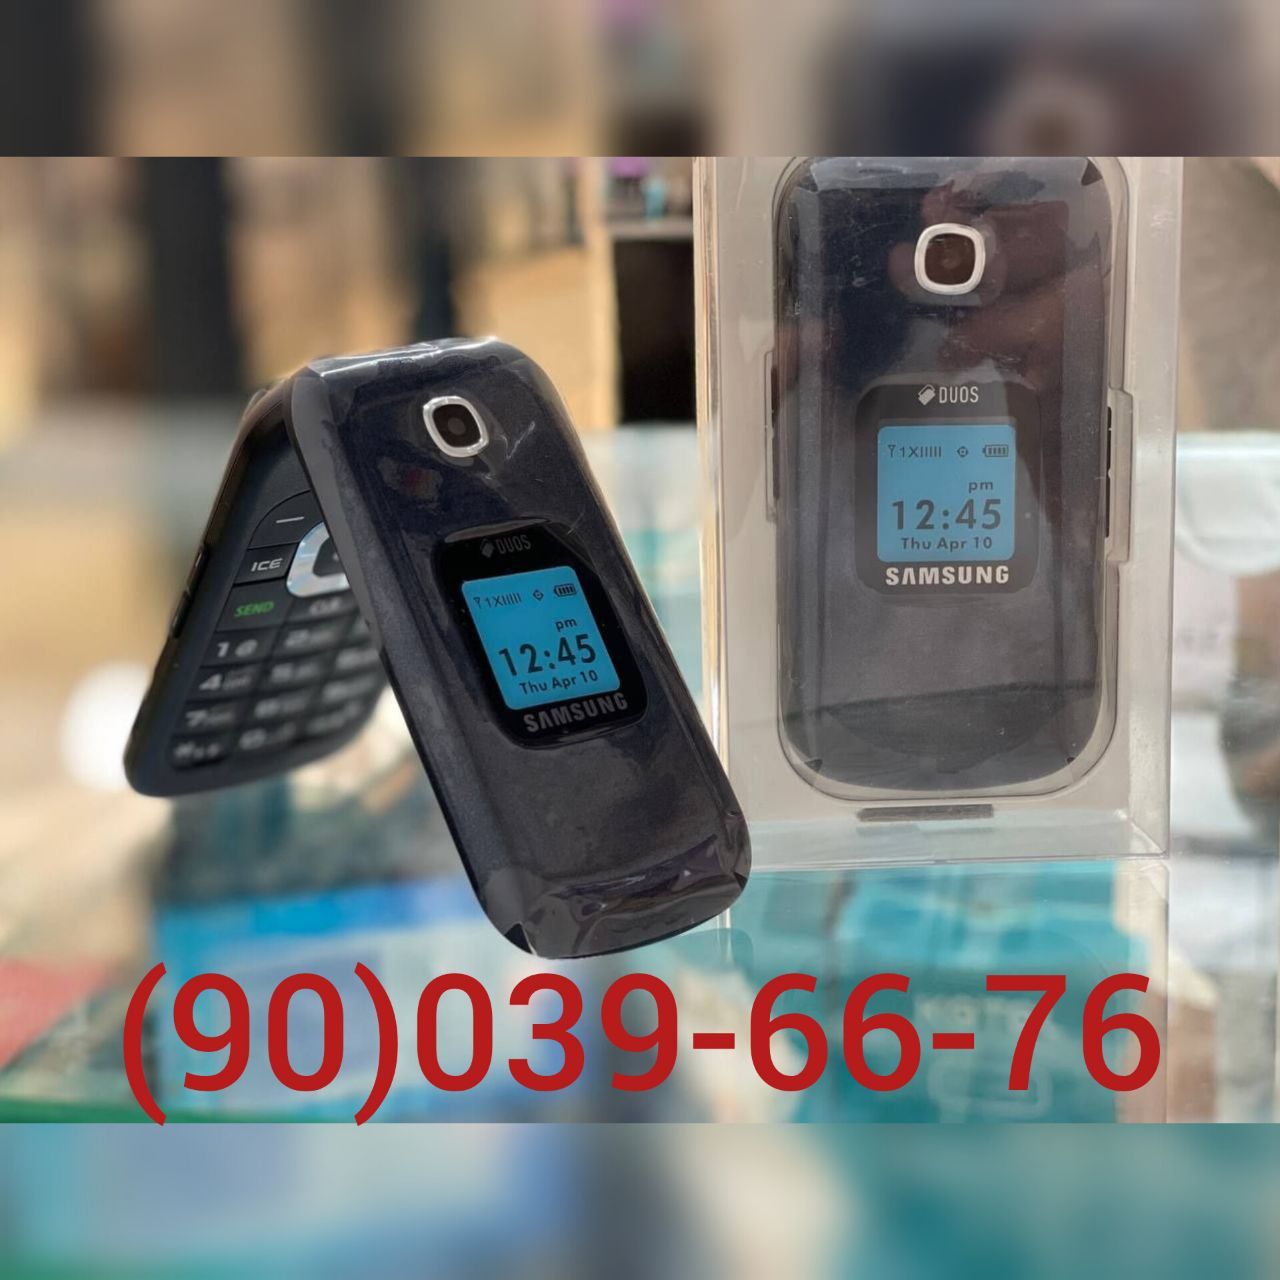 YENGI, Gusto 3 (B311V) Samsung, Nokia 2720 flip, Nokia 2660 flip, GSM.